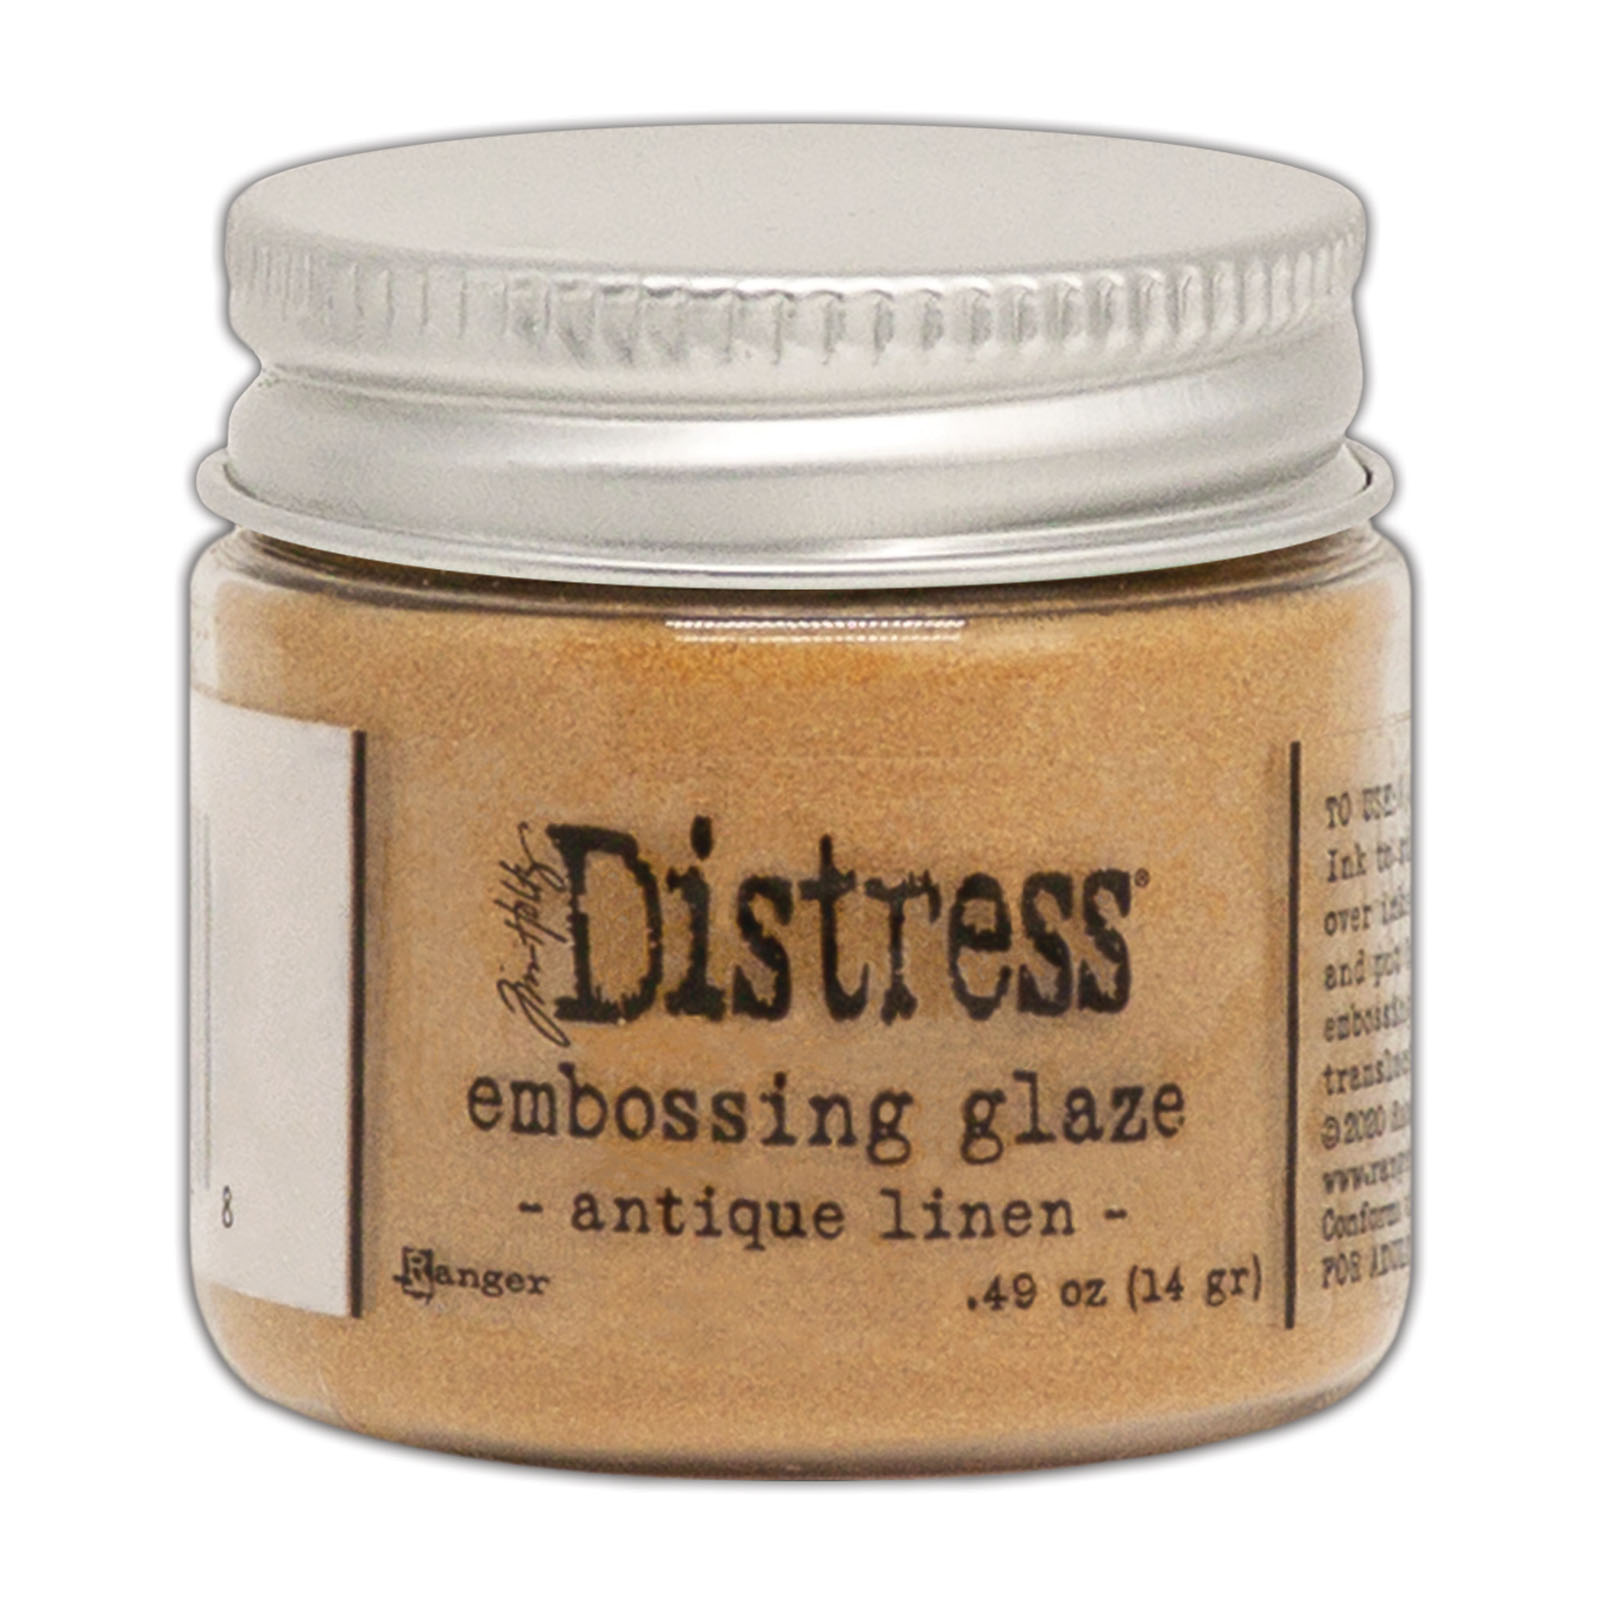 Ranger • Distress embossing glaze Antique linen